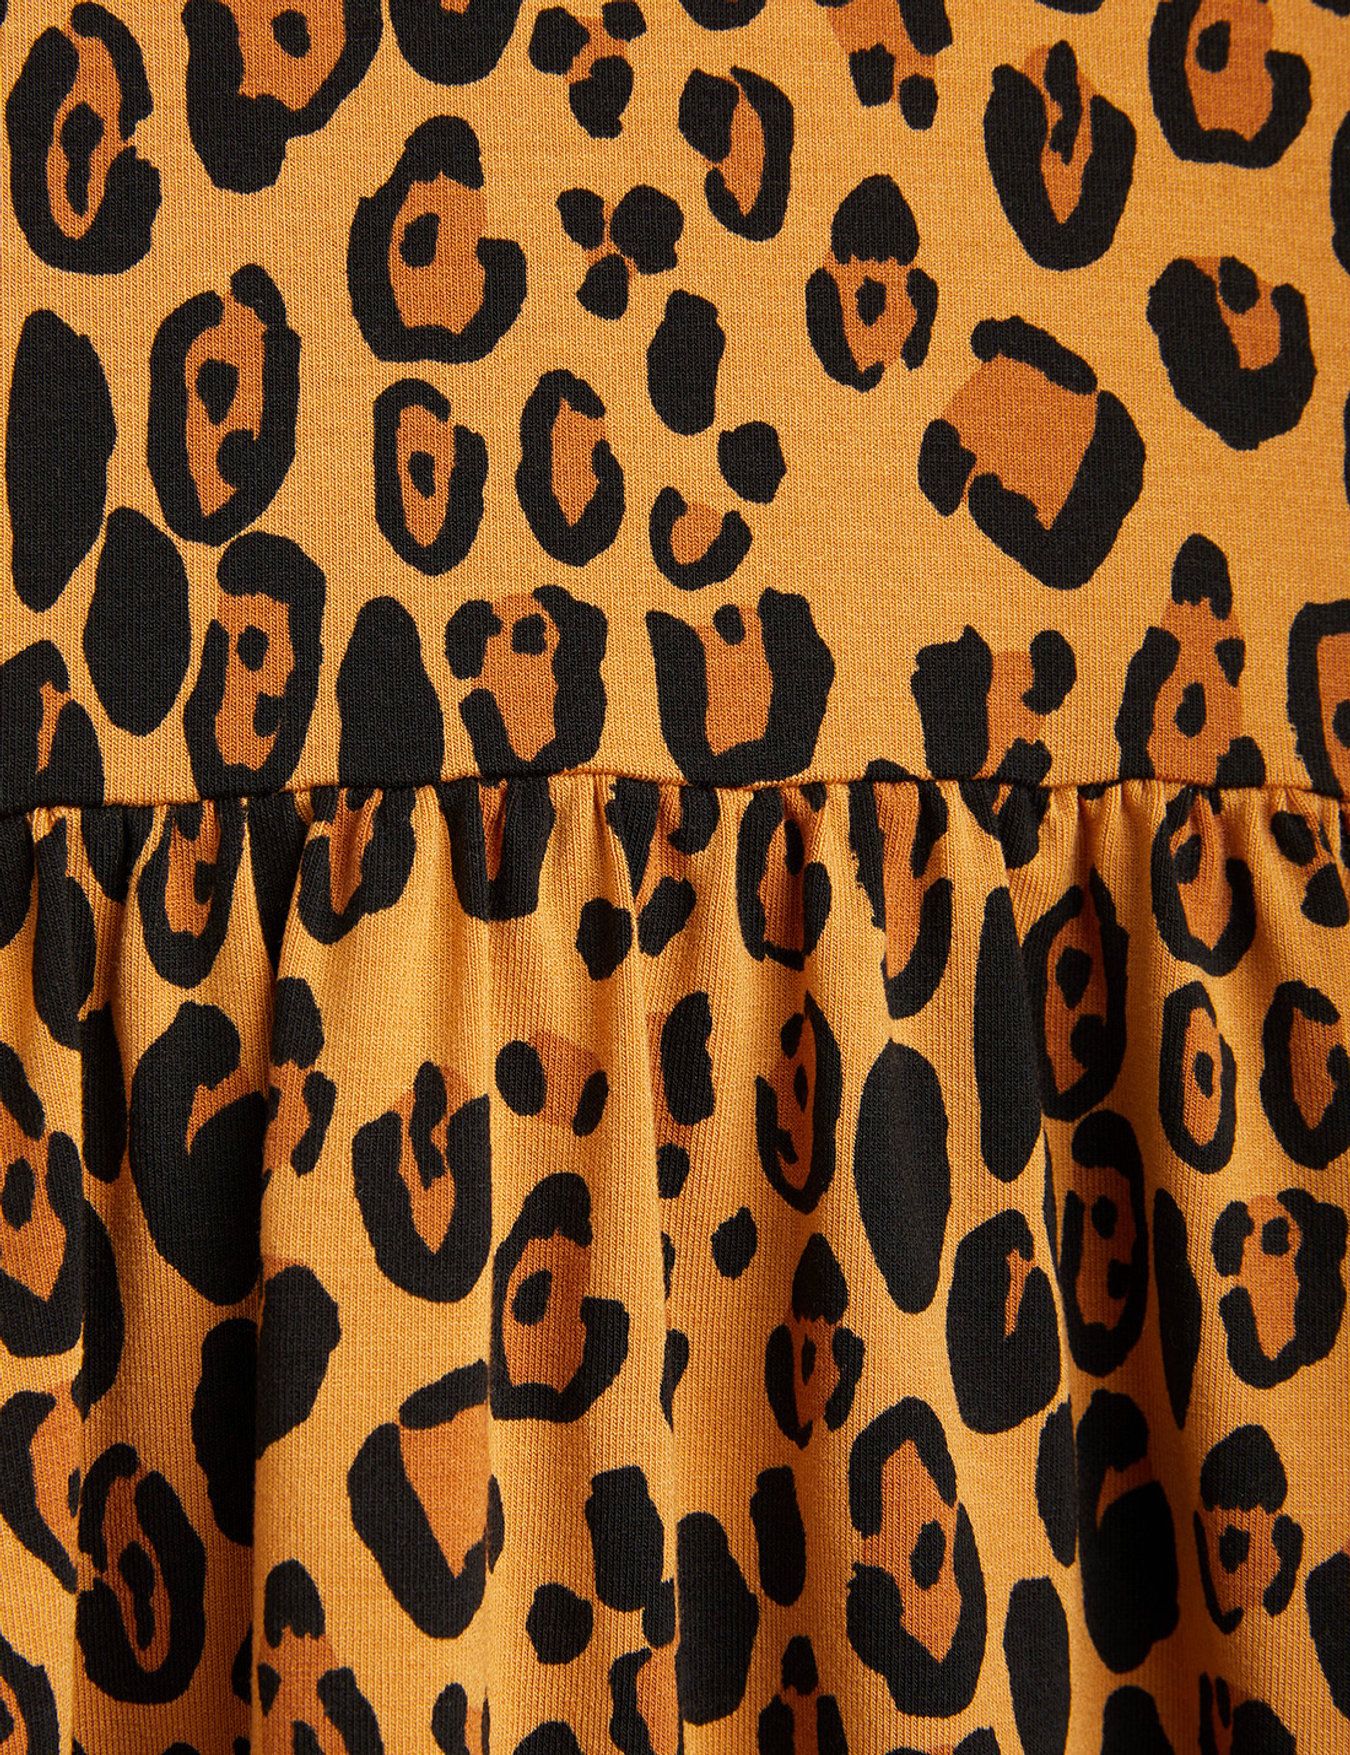 Leopard Dress - Mini Rodini